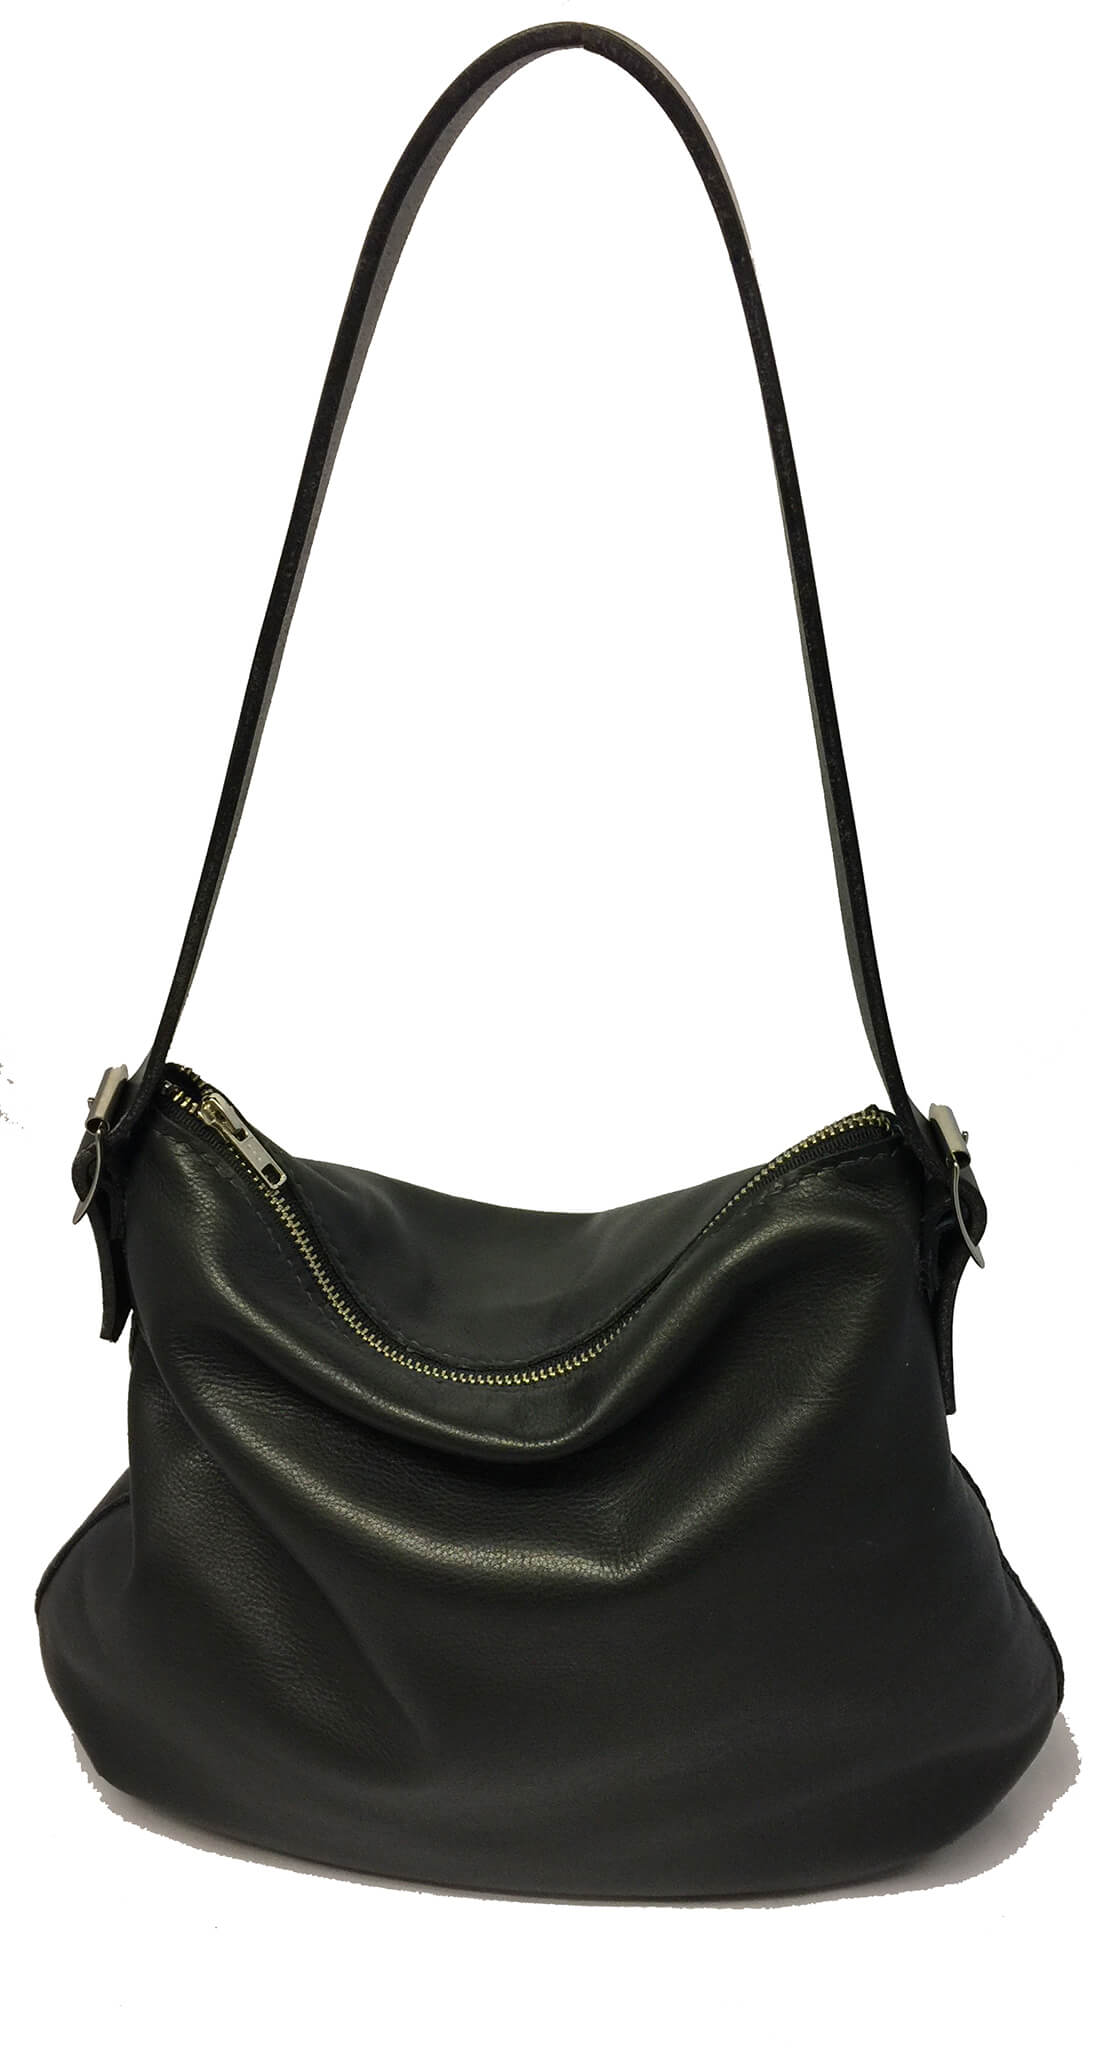 ArtZipper! Purses, Bags & Backpacks, BARBARA Leather Hobo Bag by Angela ...